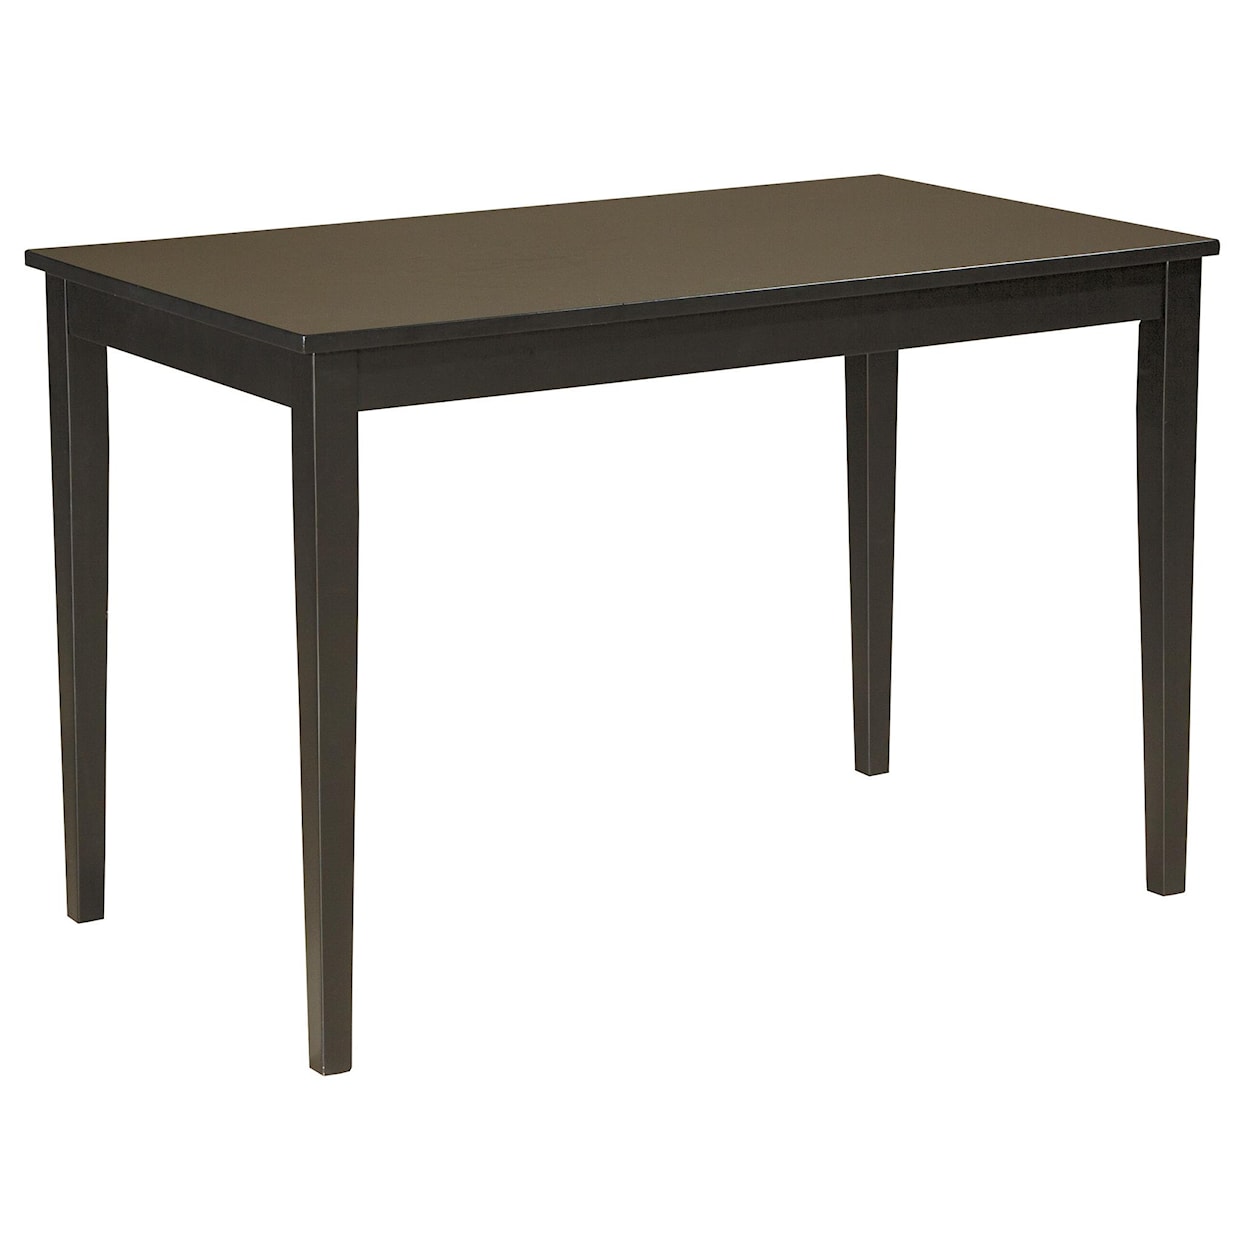 Signature Design Kimonte 5-Piece Rectangular Table Set